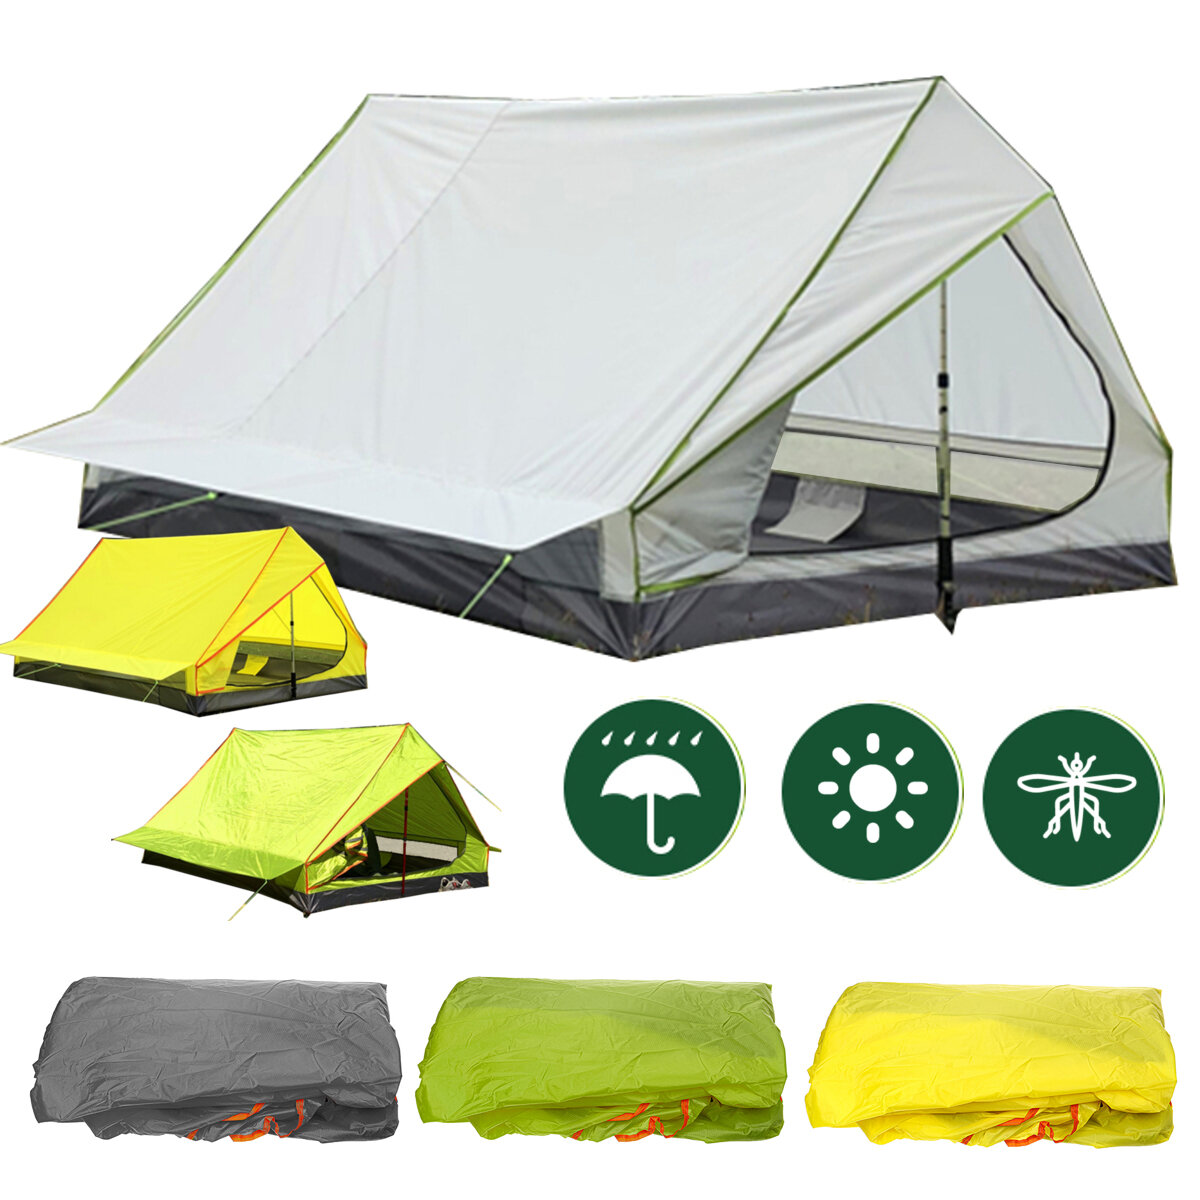 Υπαίθριο Ultralight Backpacking Tent Pole Λιγότερο φορητό Αδιάβροχο & Αντηλιακό Σκηνή